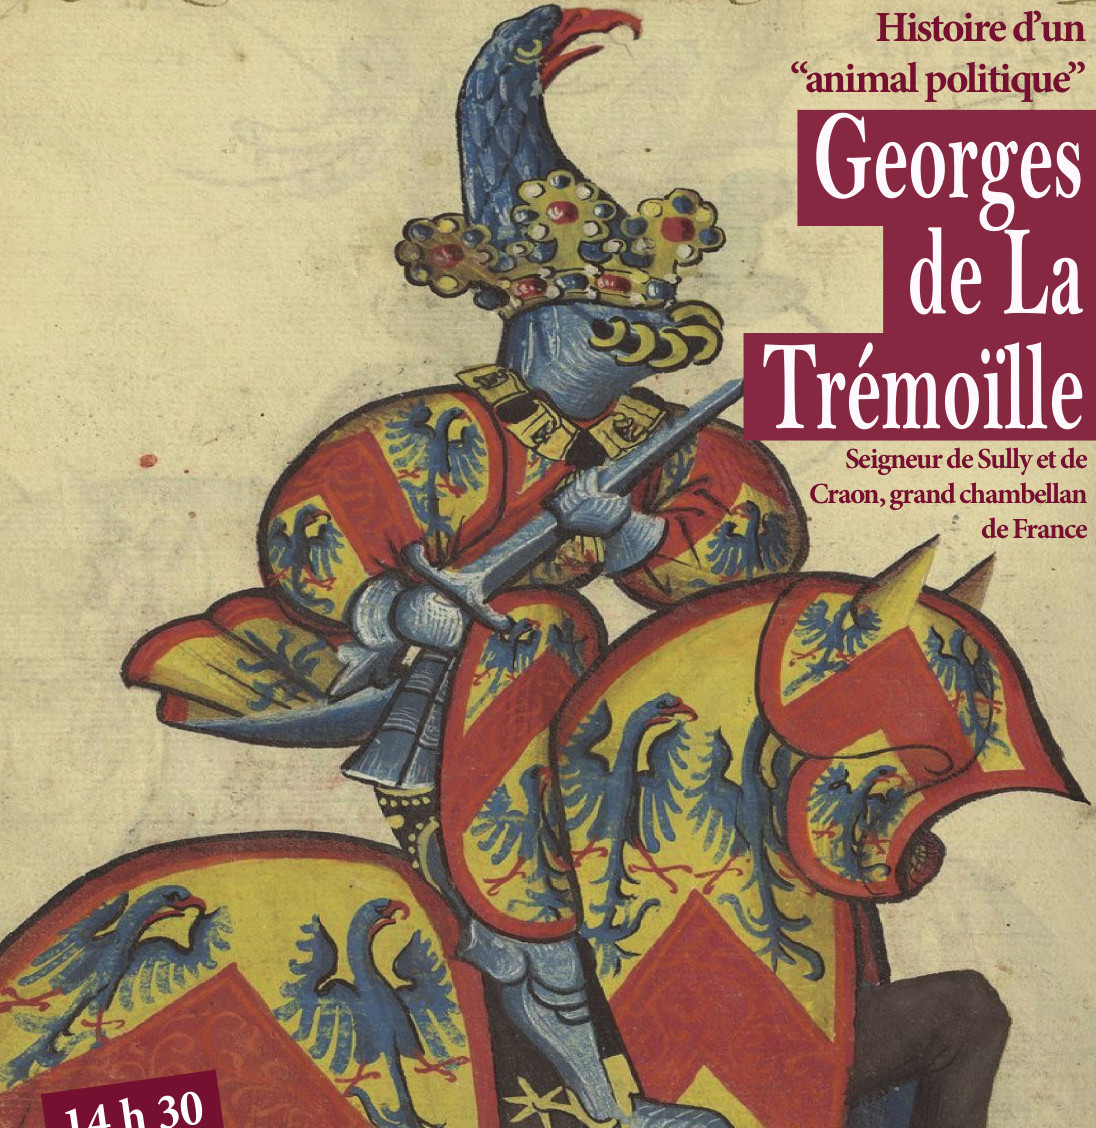 Armoiries stylisées de G. de la Trémoïlle.